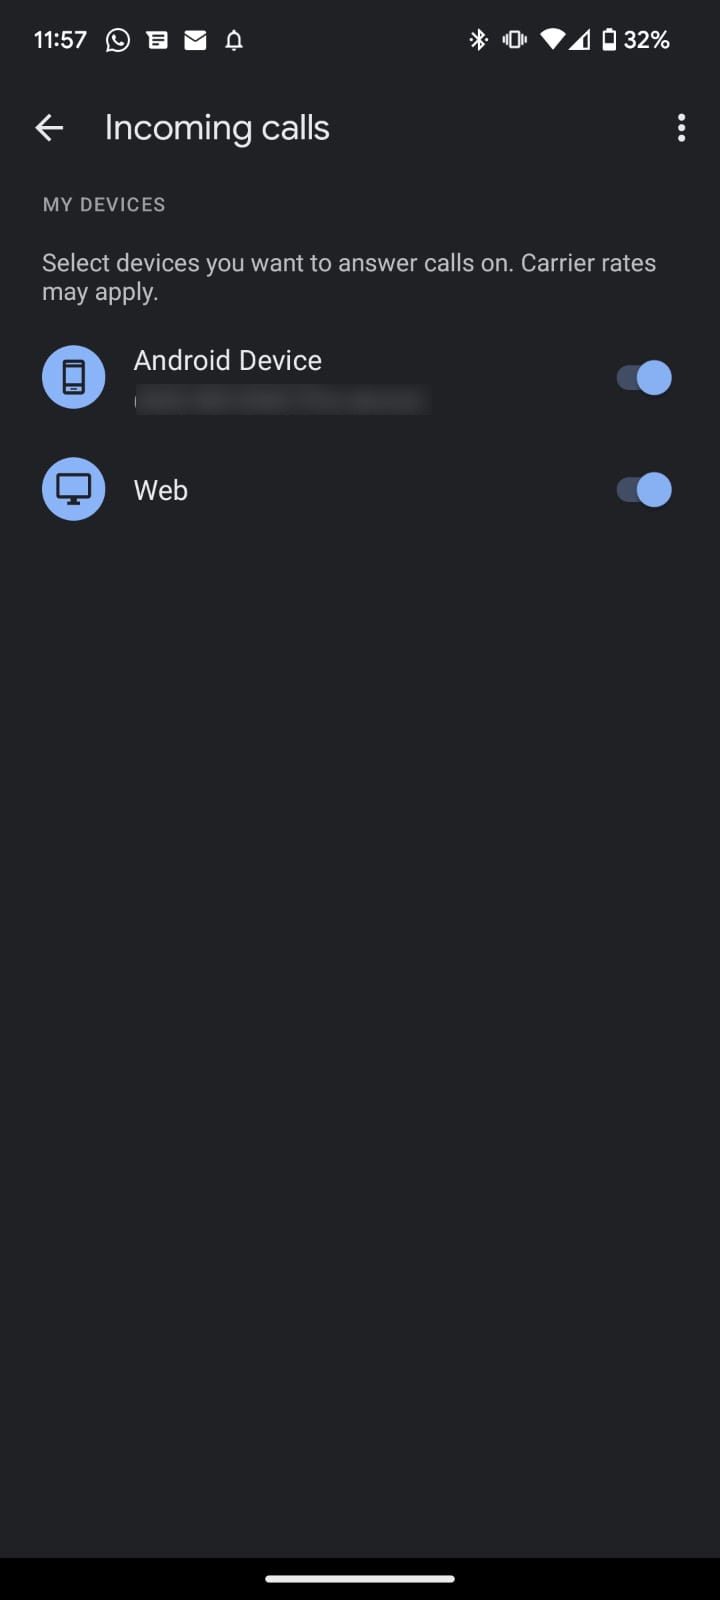 Captura de tela mostrando configurações para atender chamadas em telefones Samsung